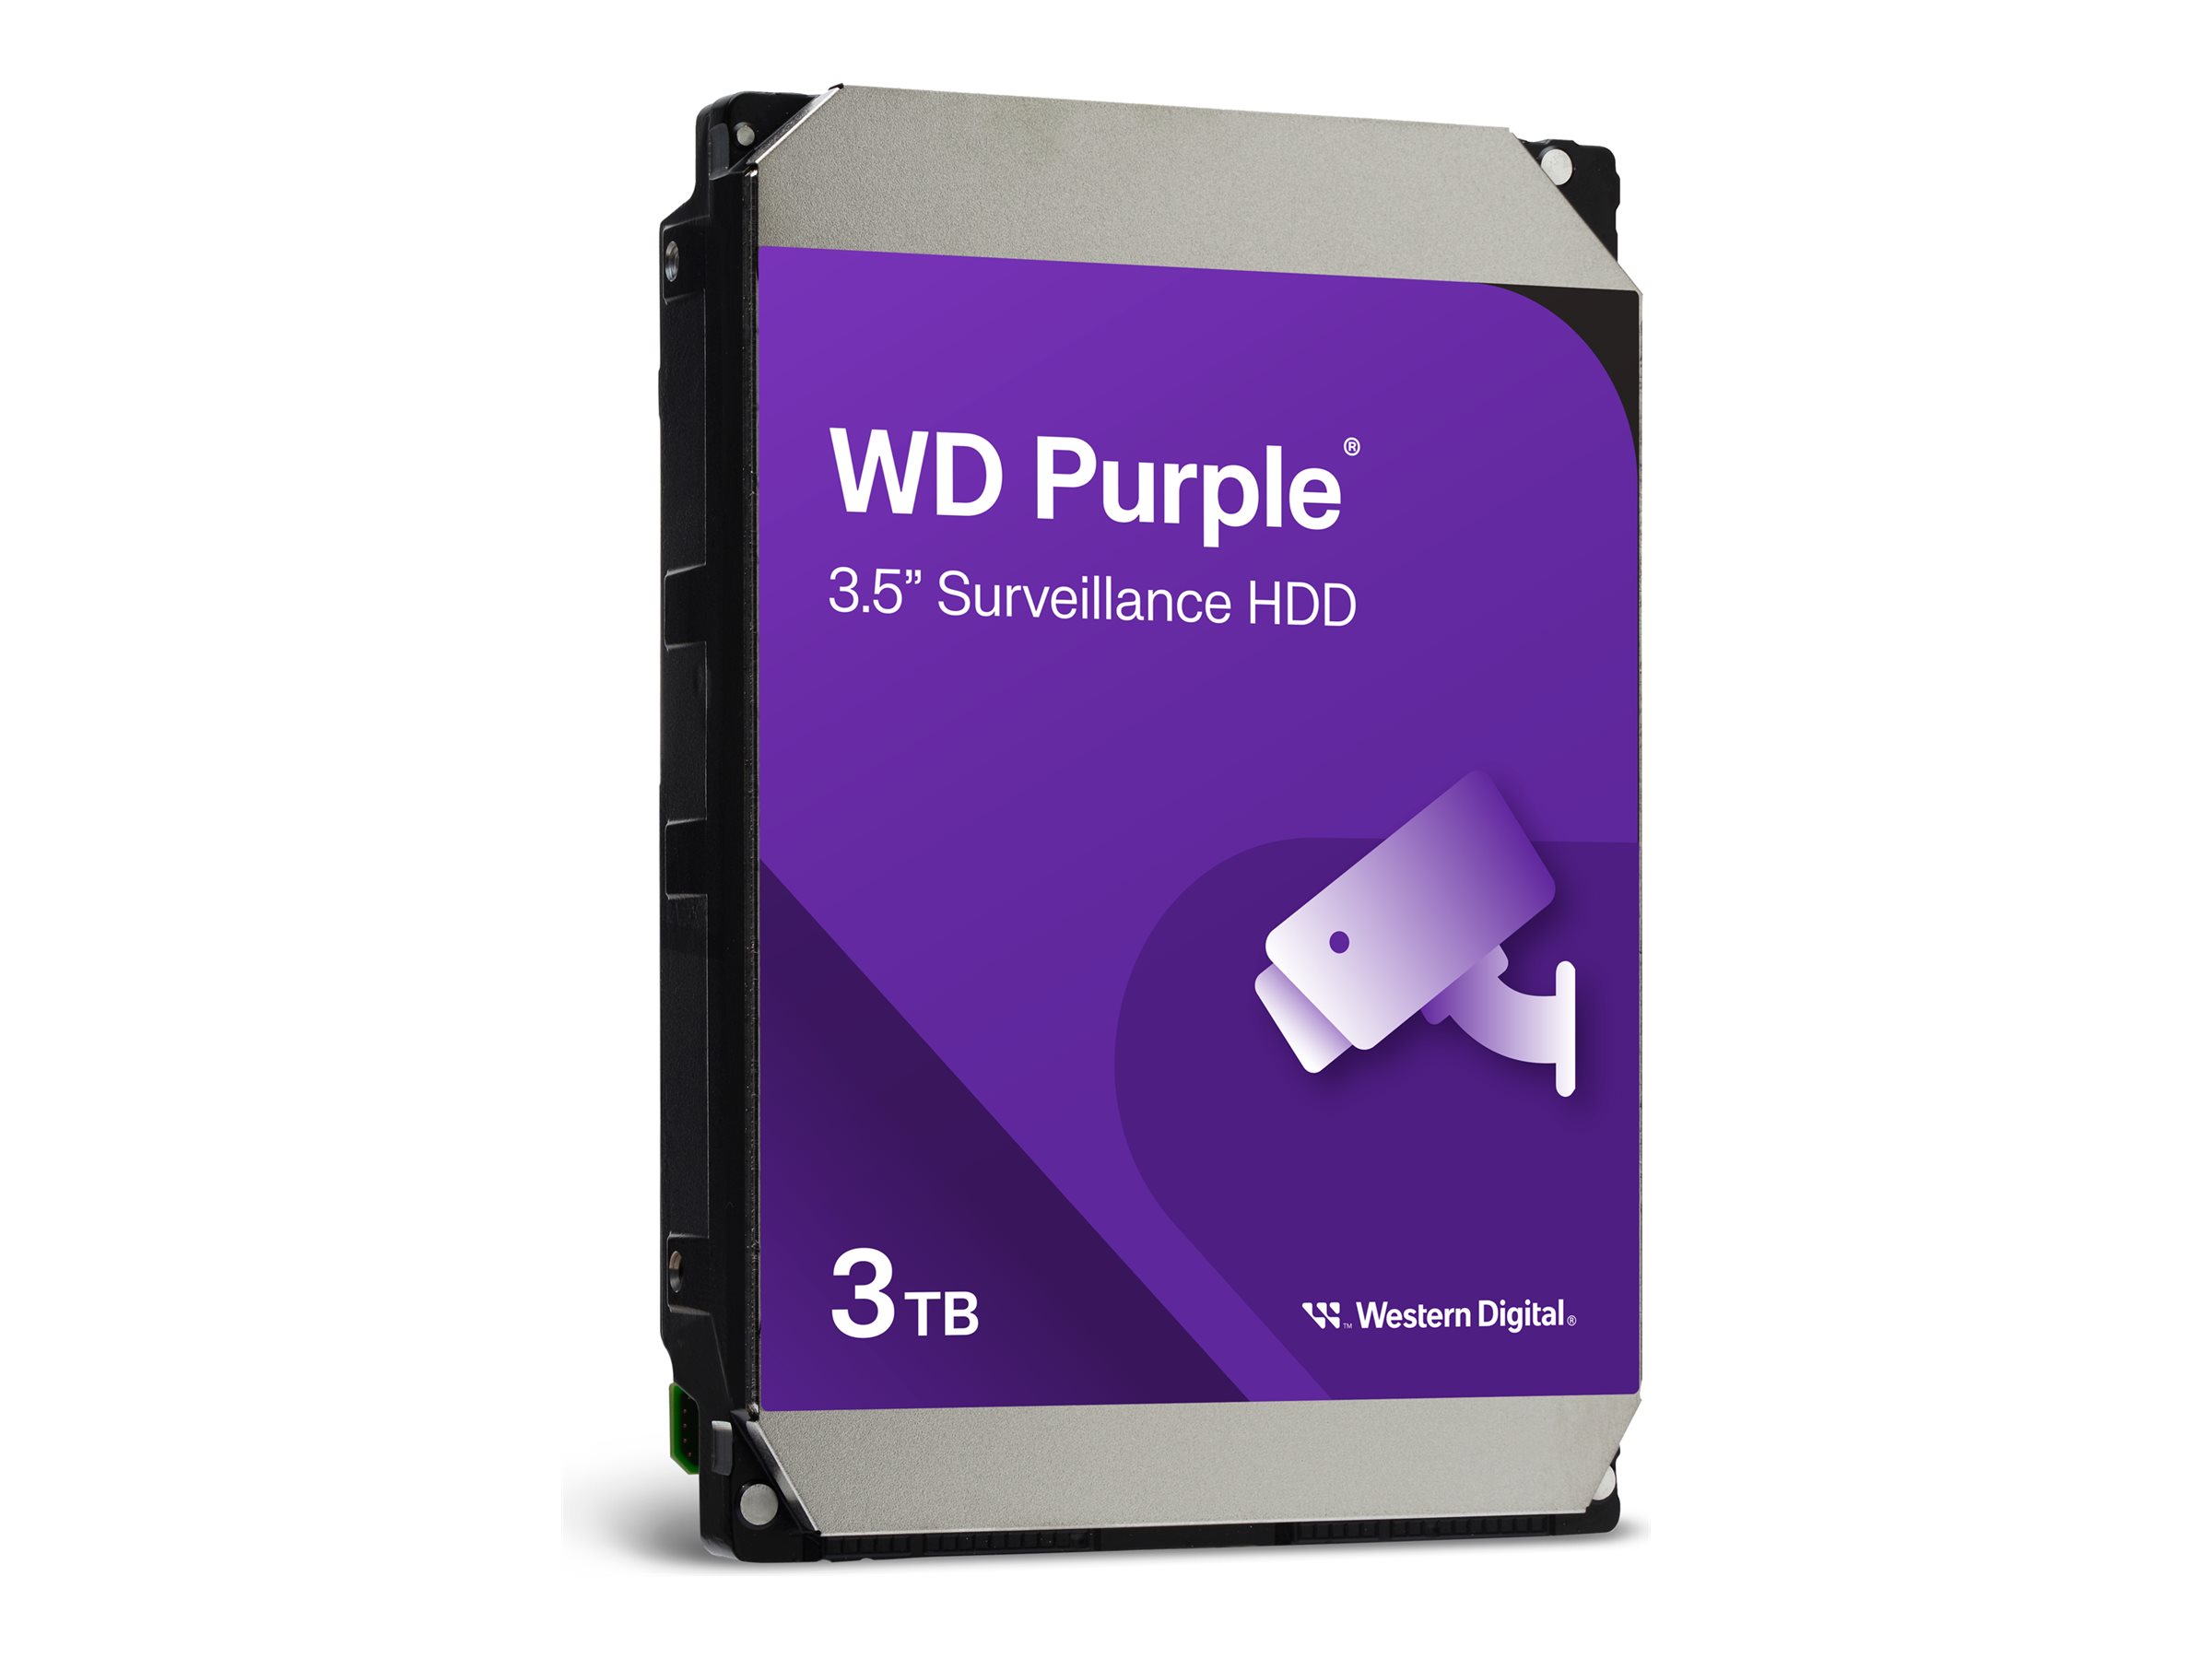 WD Purple WD33PURZ - Disque dur - 3 To - surveillance - interne - 3.5" - SATA 6Gb/s - 5400 tours/min - mémoire tampon : 256 Mo - WD33PURZ - Disques durs internes